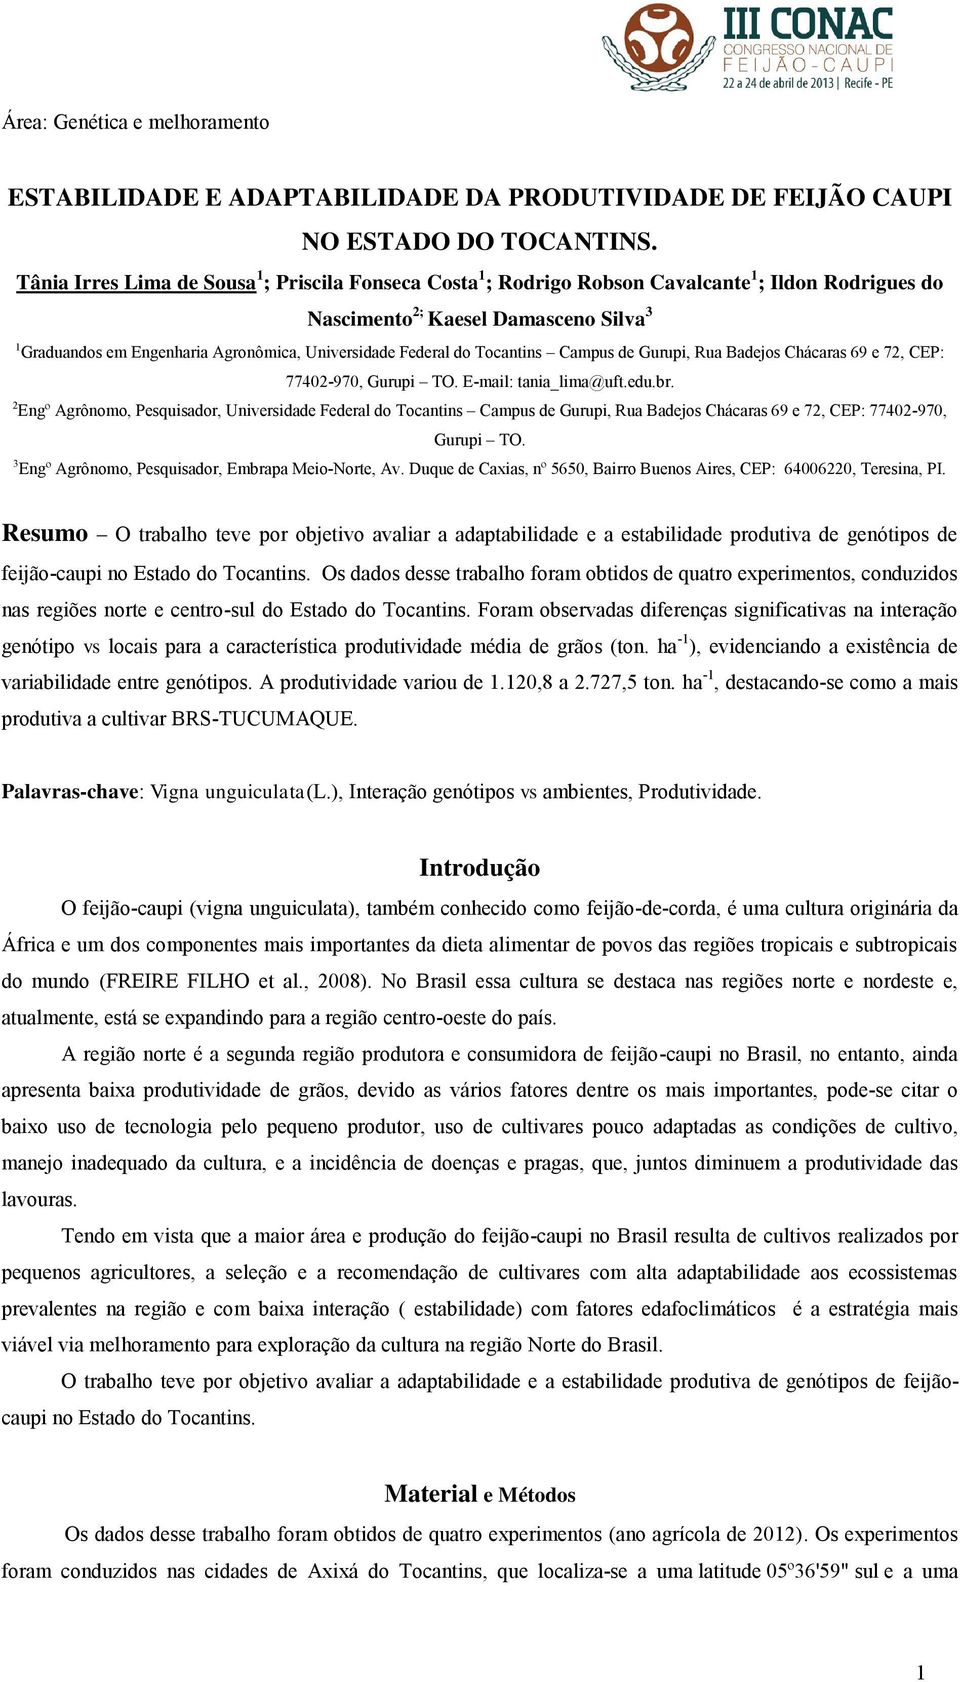 Federal do Tocantins Campus de Gurupi, Rua Badejos Chácaras 69 e 72, CEP: 77402-970, Gurupi TO. E-mail: tania_lima@uft.edu.br.